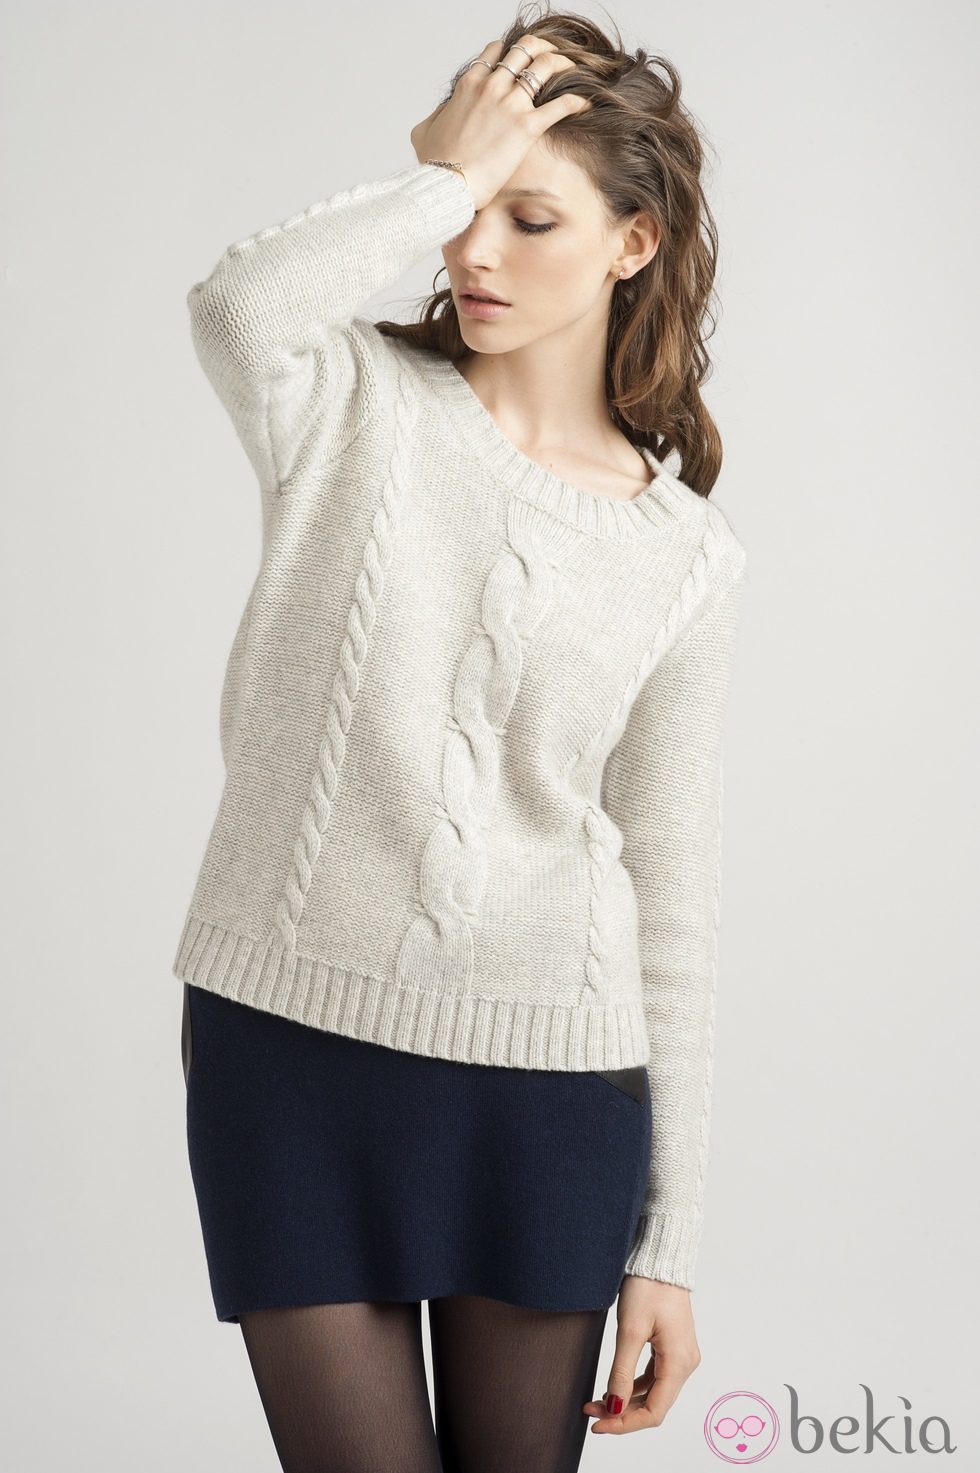 Jersey blanco de la colección otoño/invierno 2013/2014 de Marie Sixtine